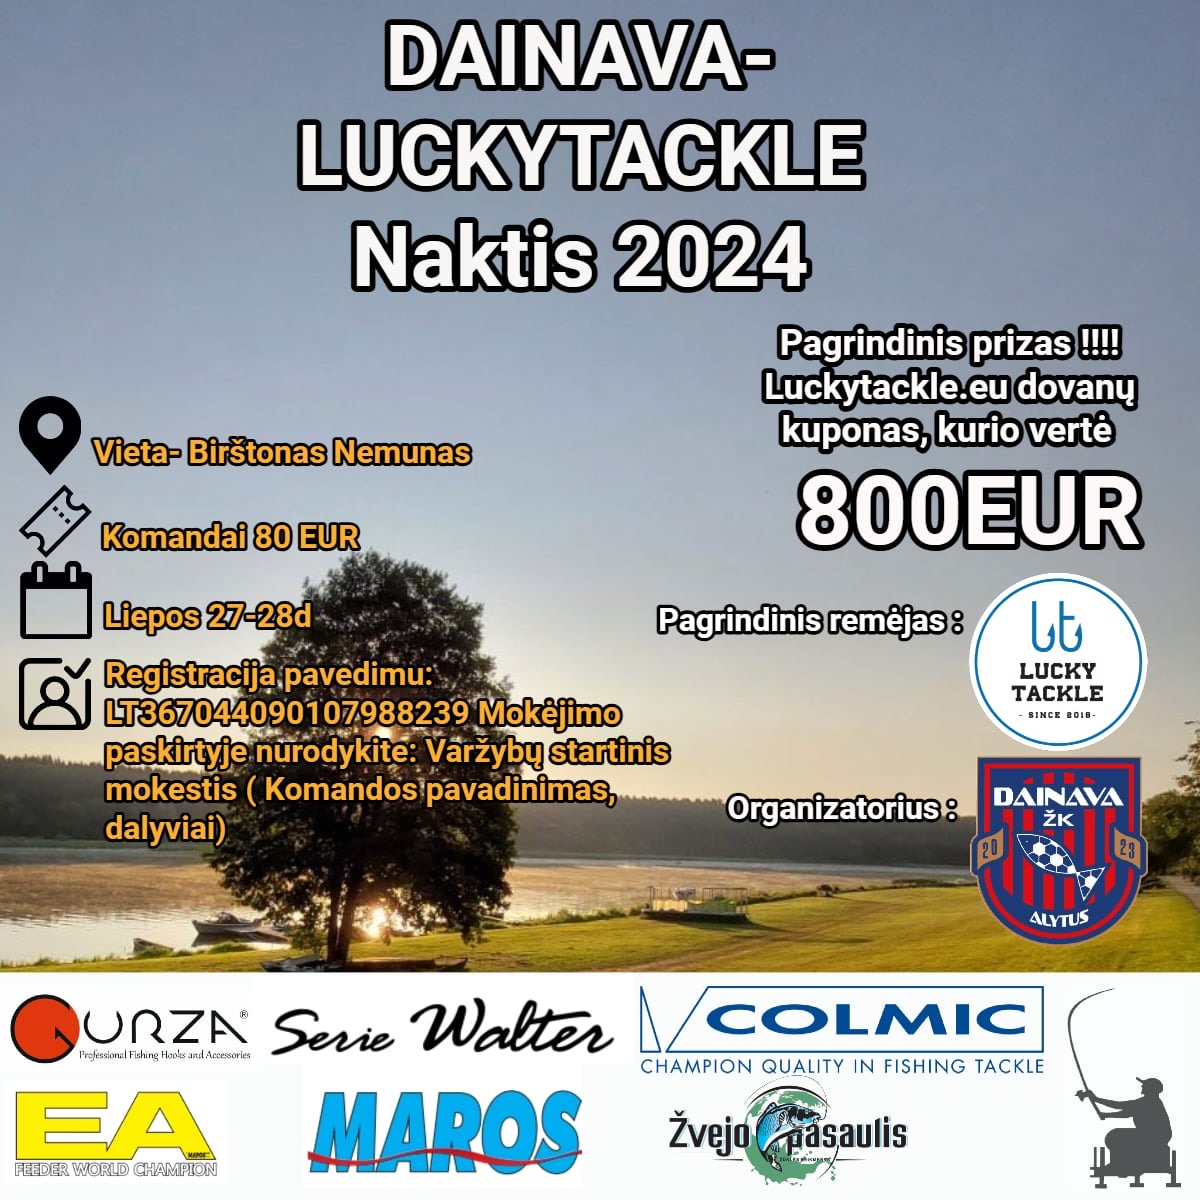 Dainava-Luckytacle naktis 2024